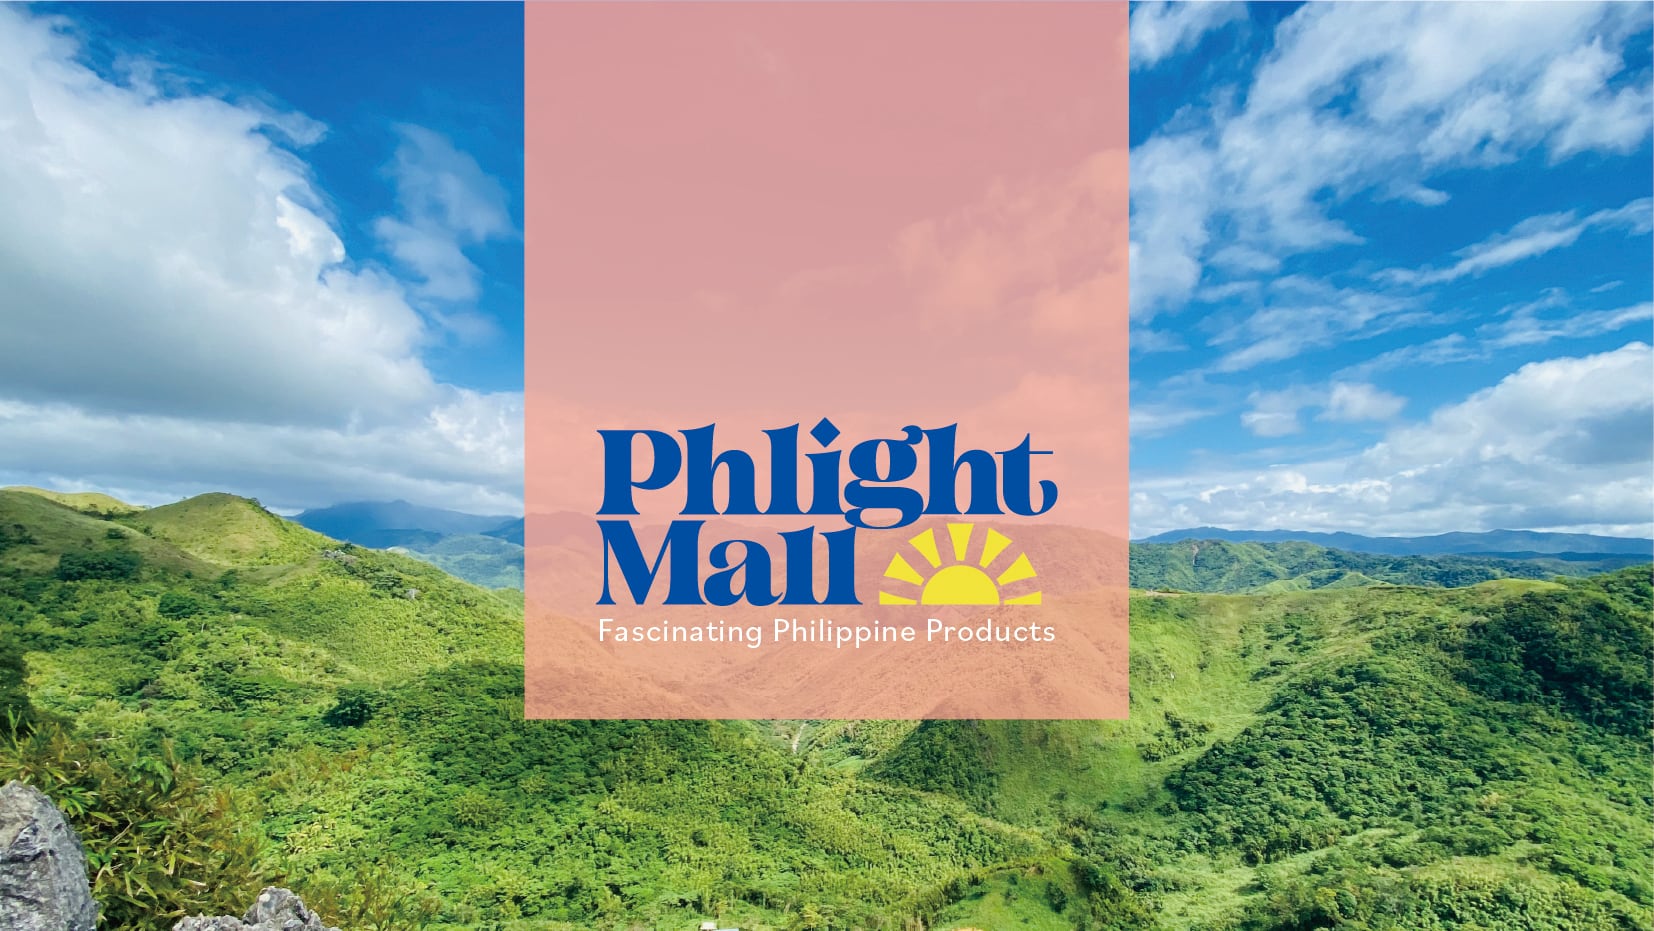 Phlight Mall